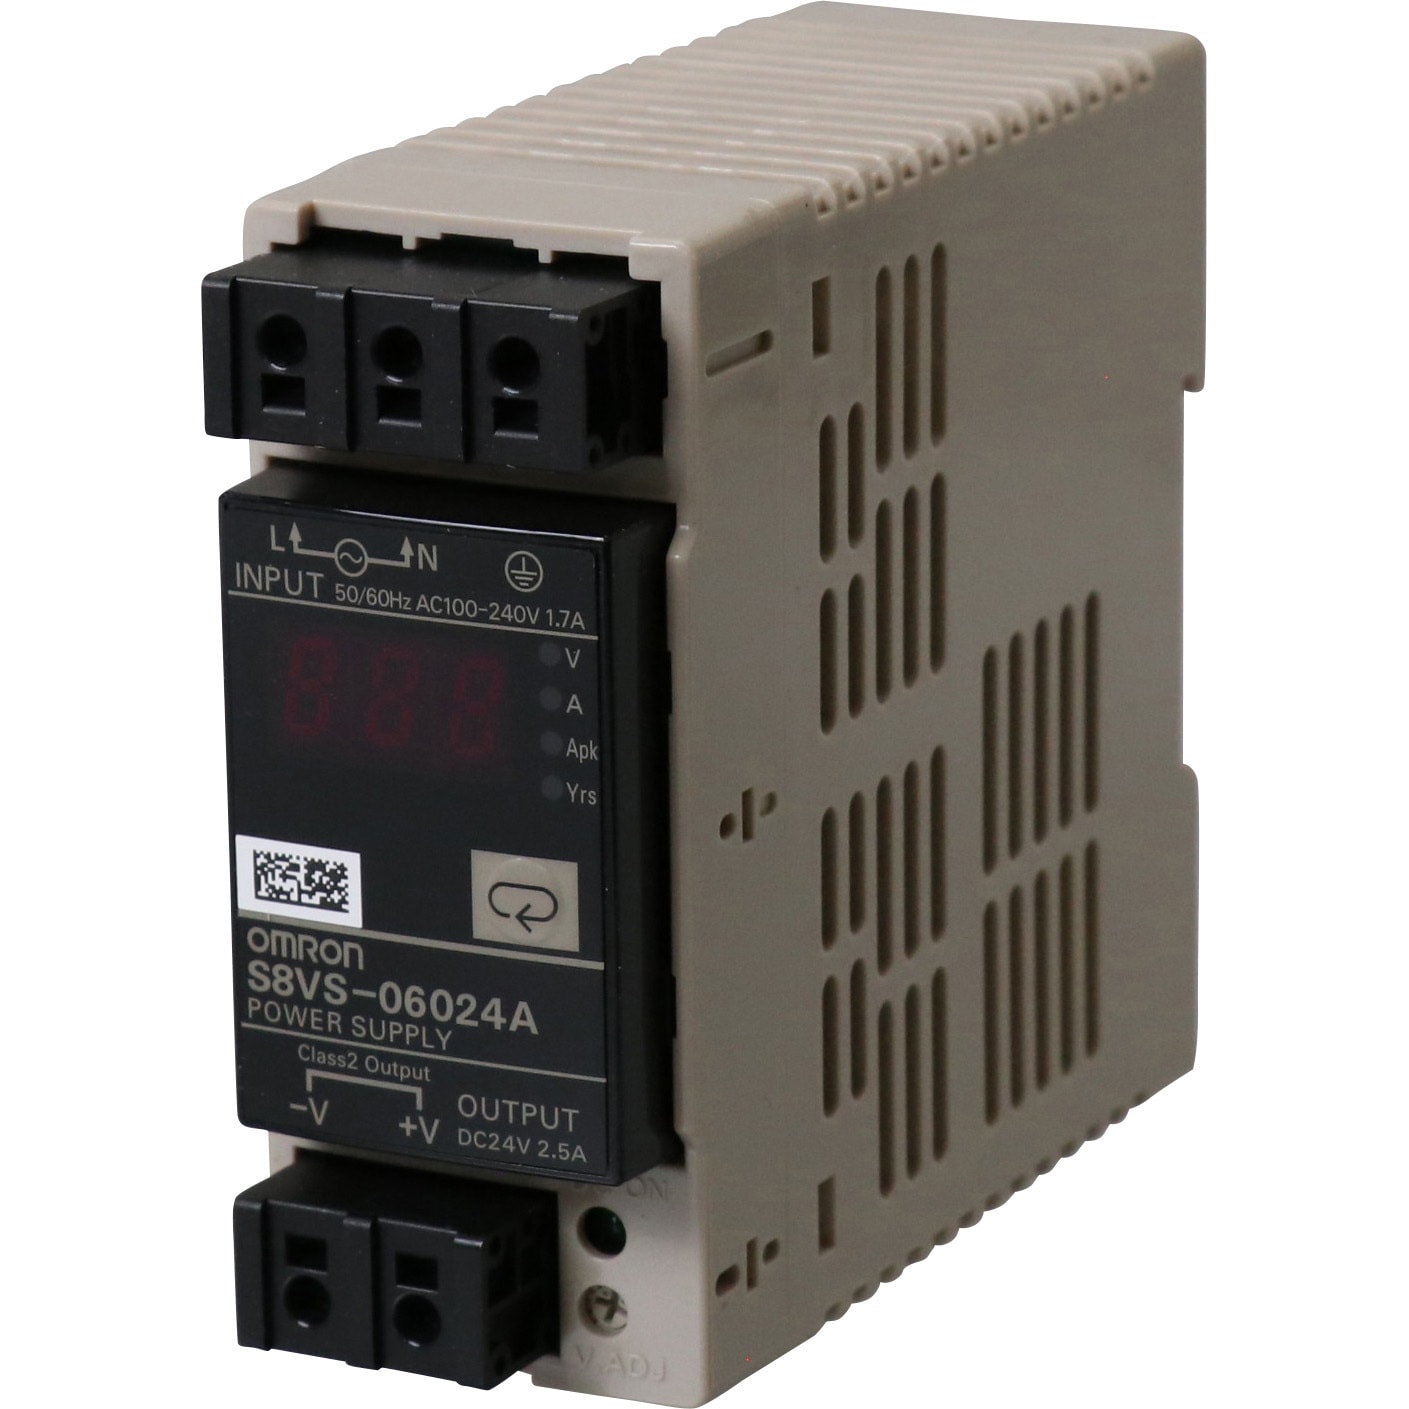 OMRON(オムロン) スイッチング パワーサプライ S8VSタイプ S8VS-18024A - 3